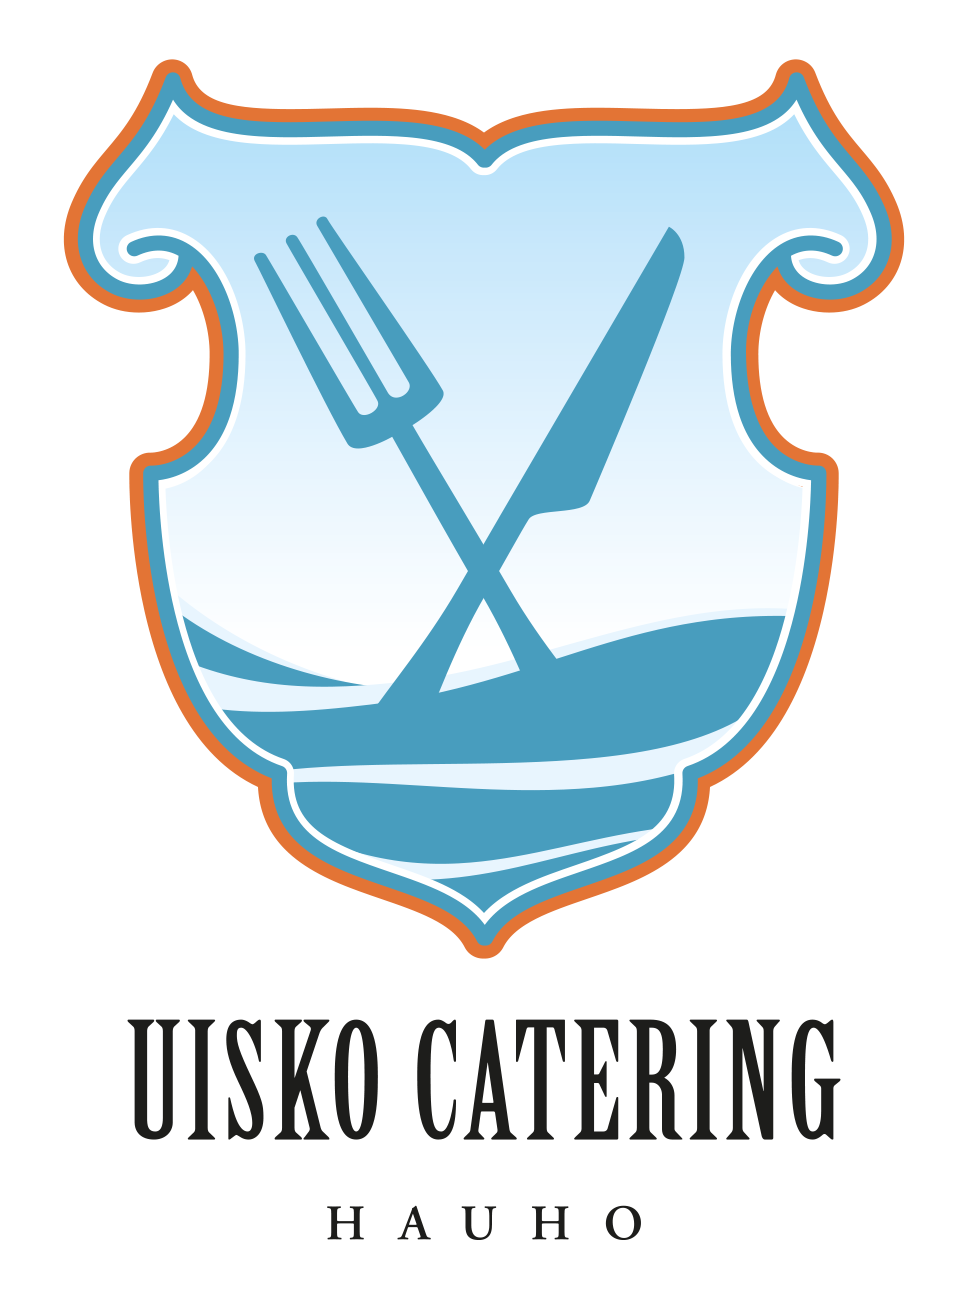 Uisko Catering